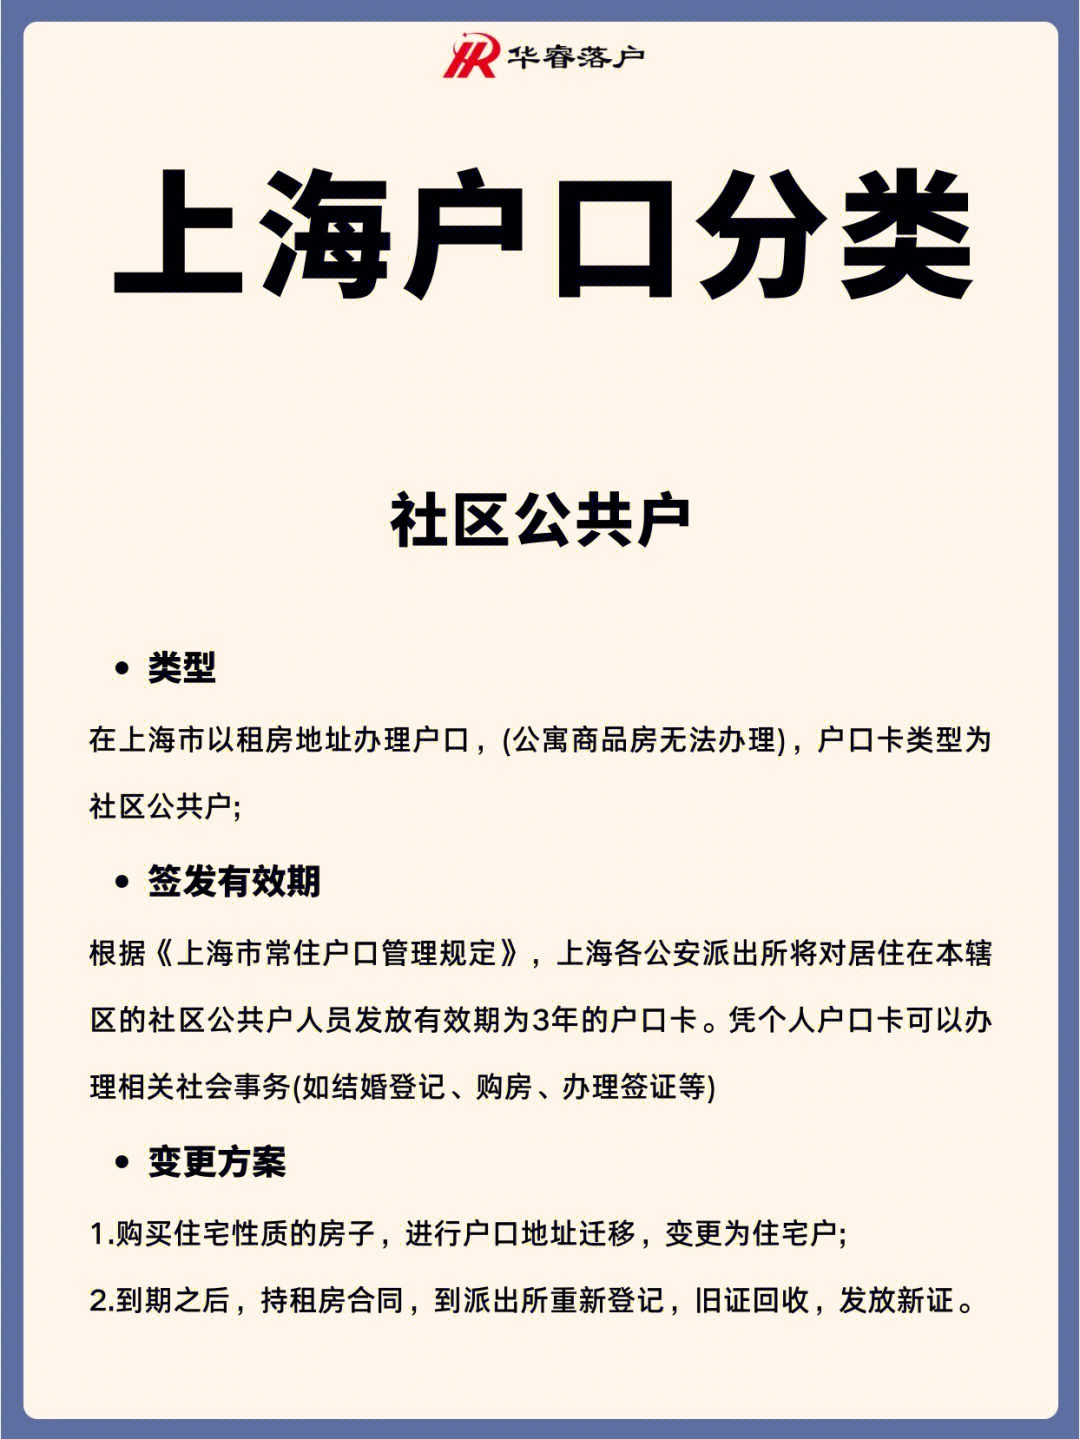 上海最新房产限购政策_广州房产限购政策_南京限购房产政策